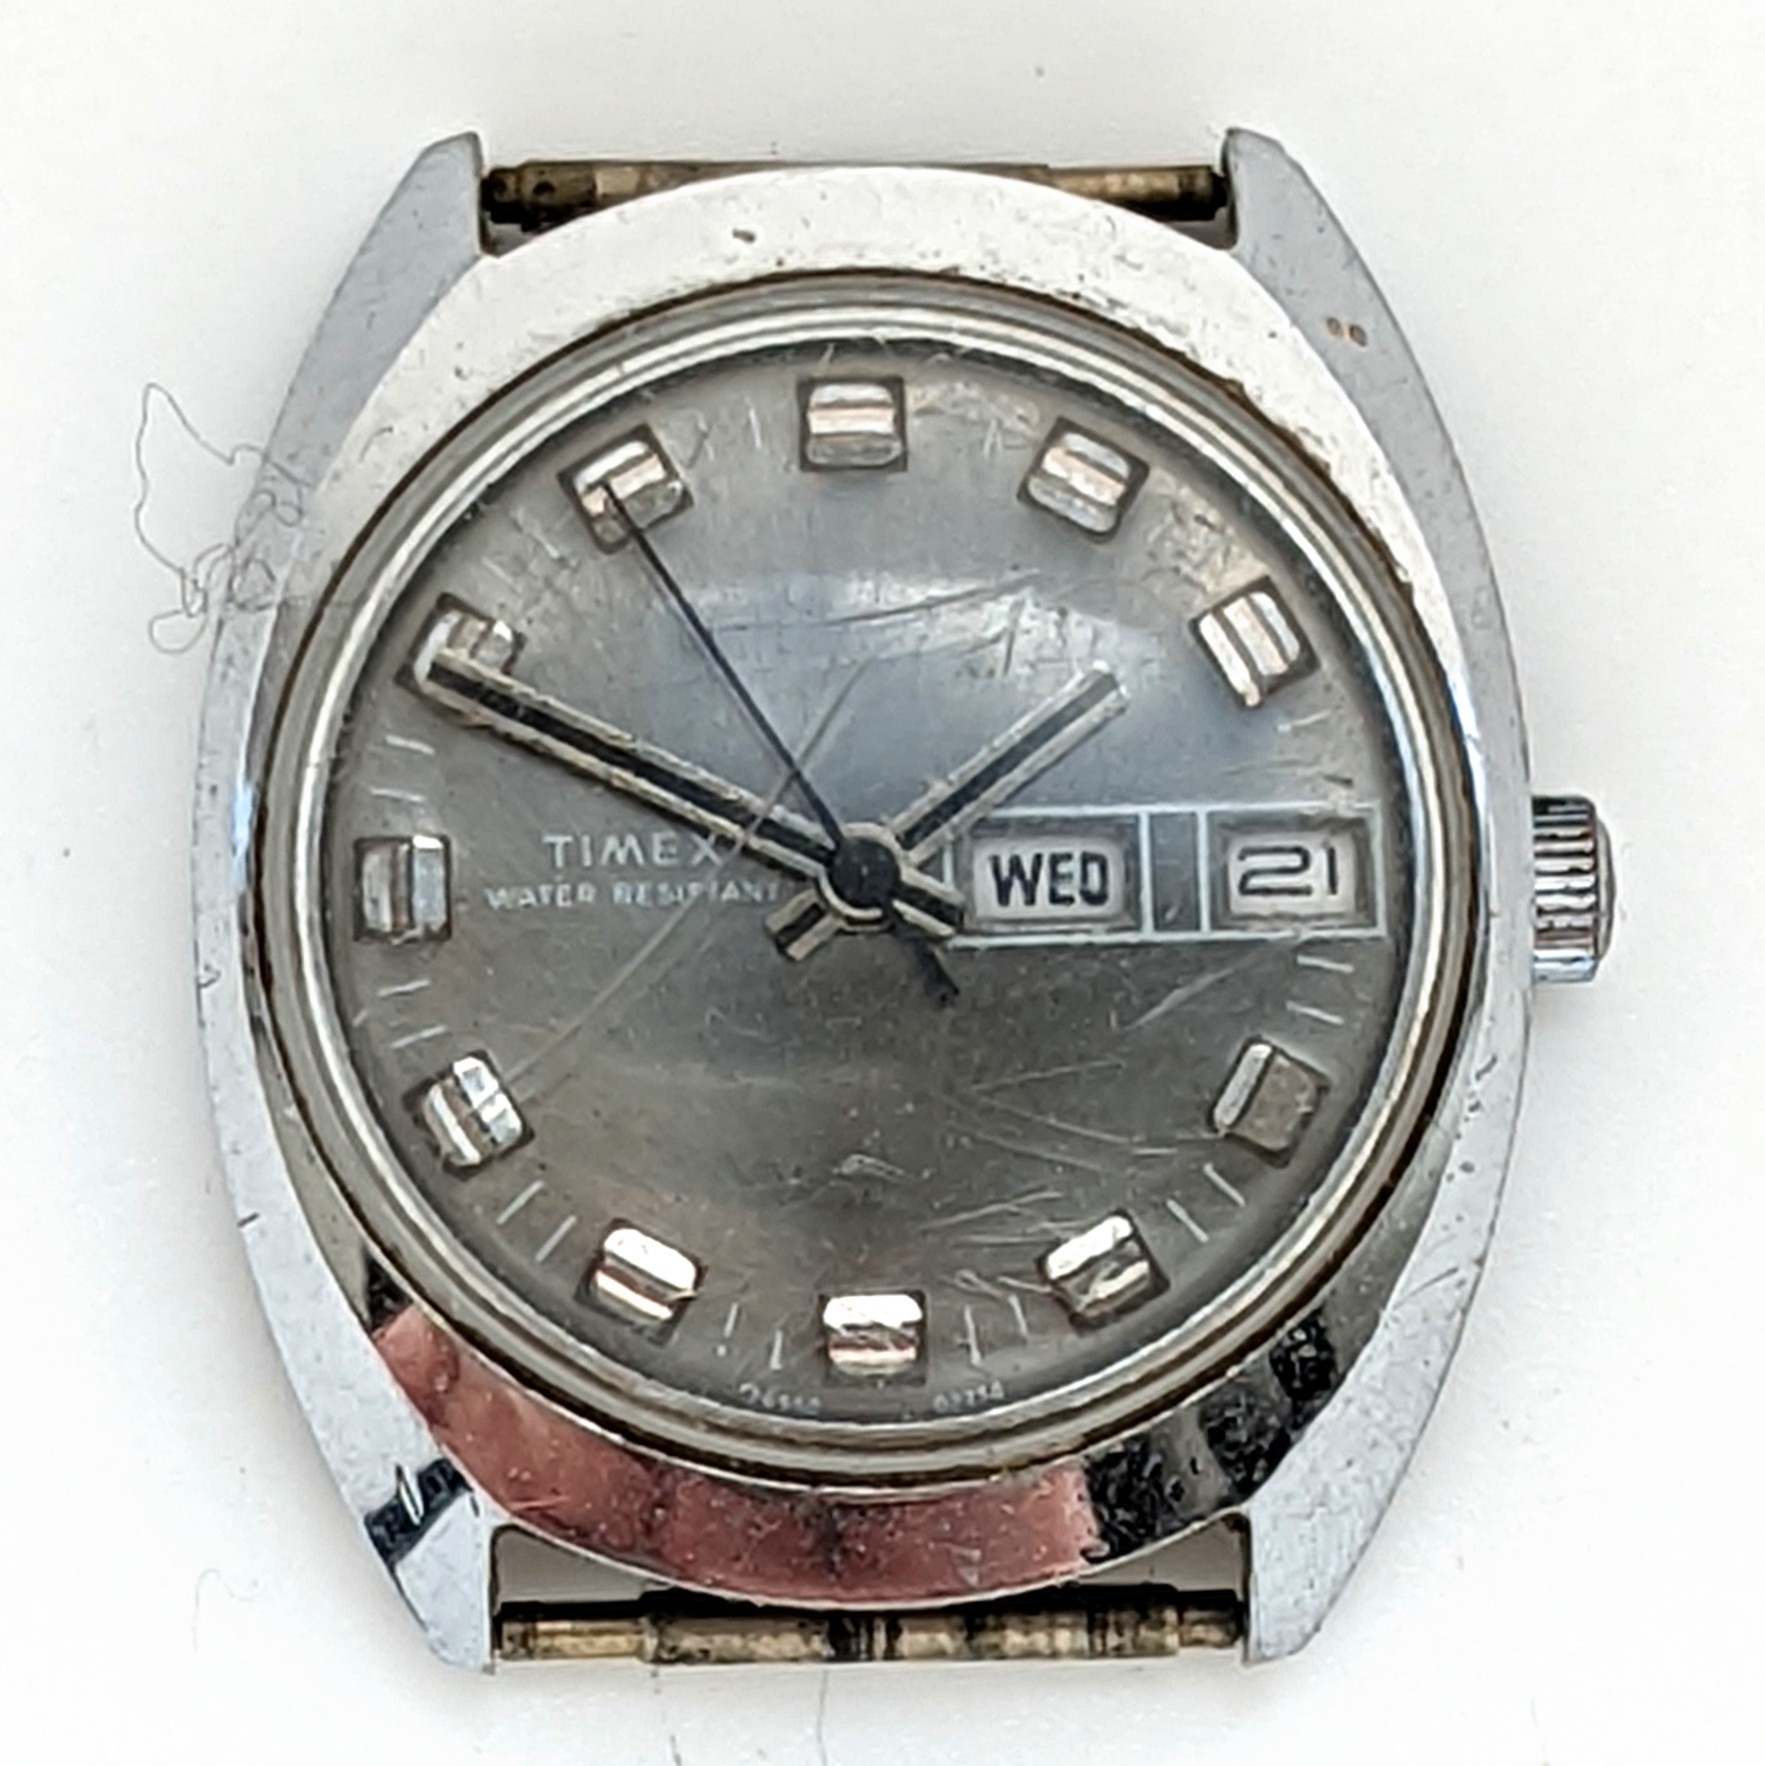 Timex Marlin 26950 02774 [1974]